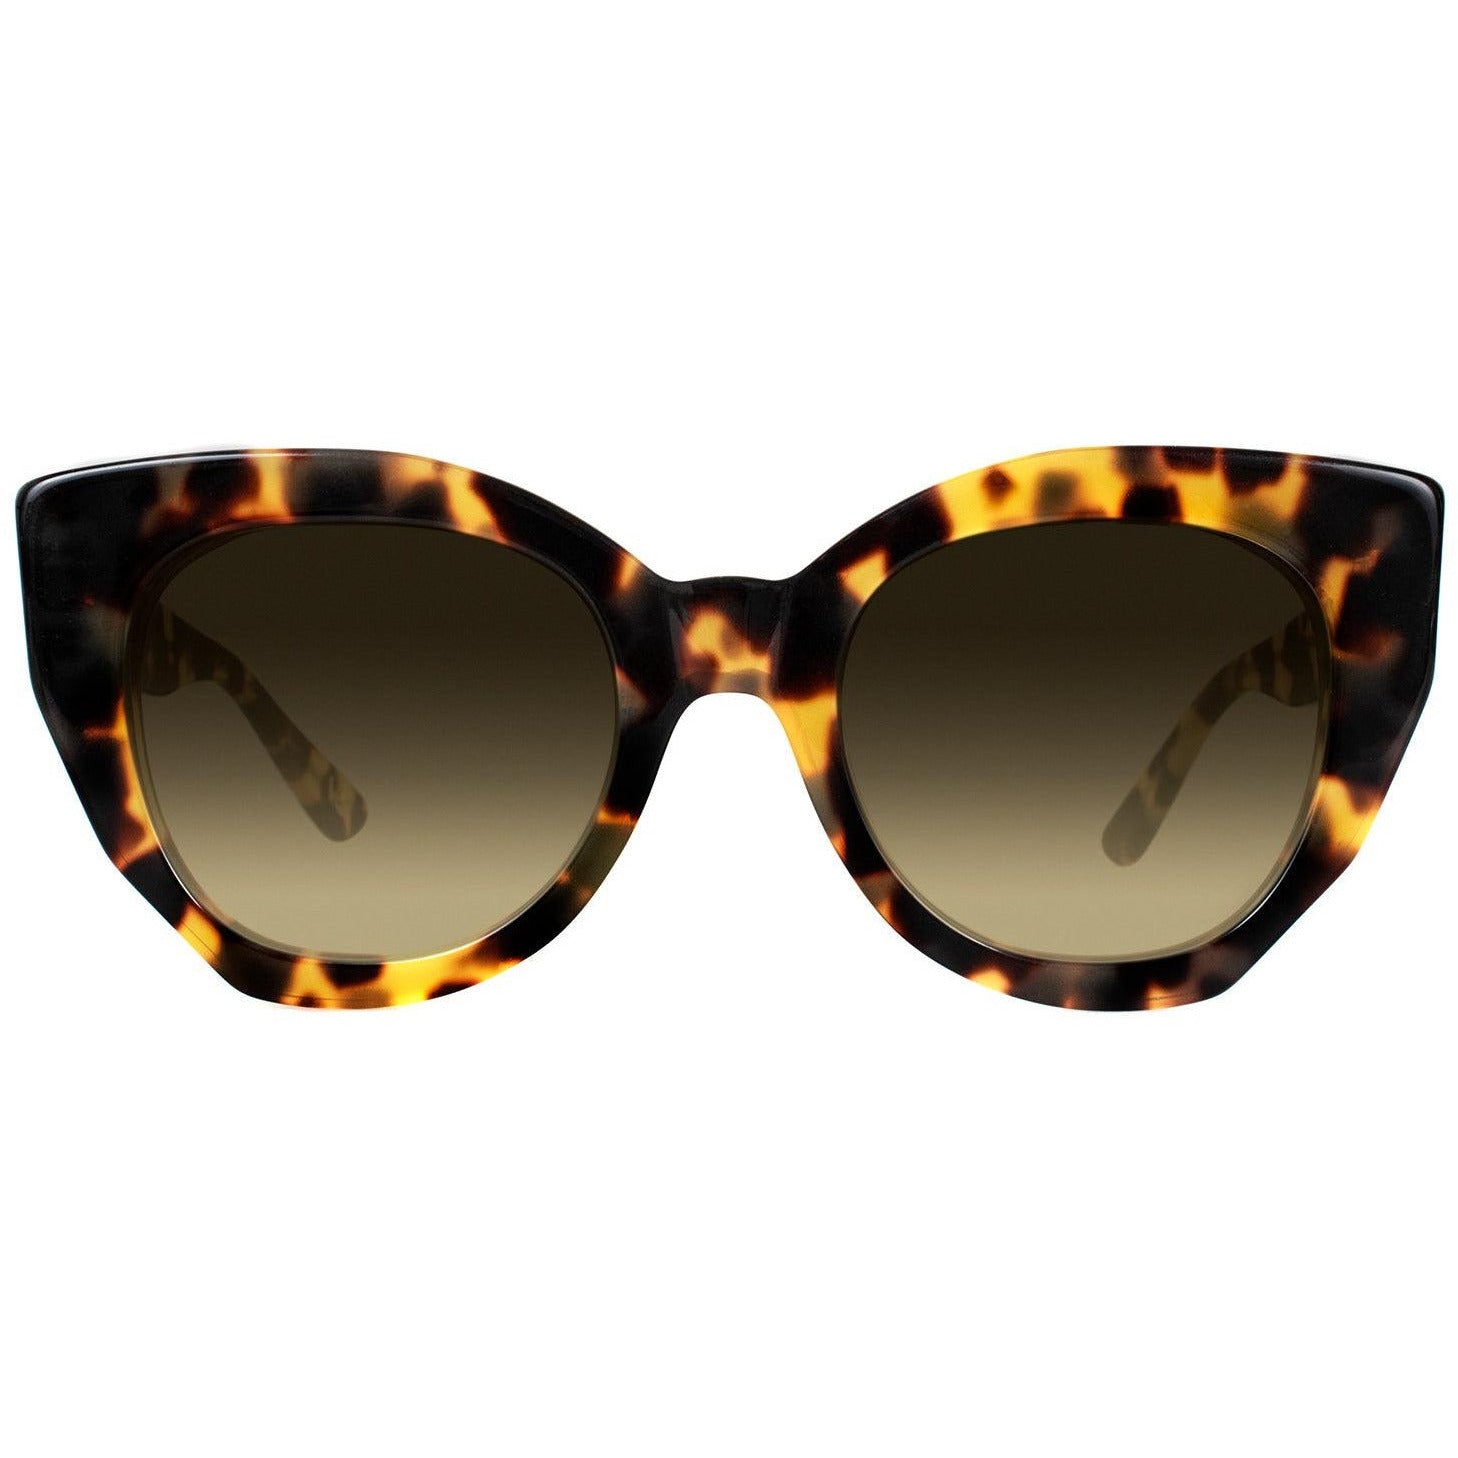 Ciello Sunglasses | Vint and York